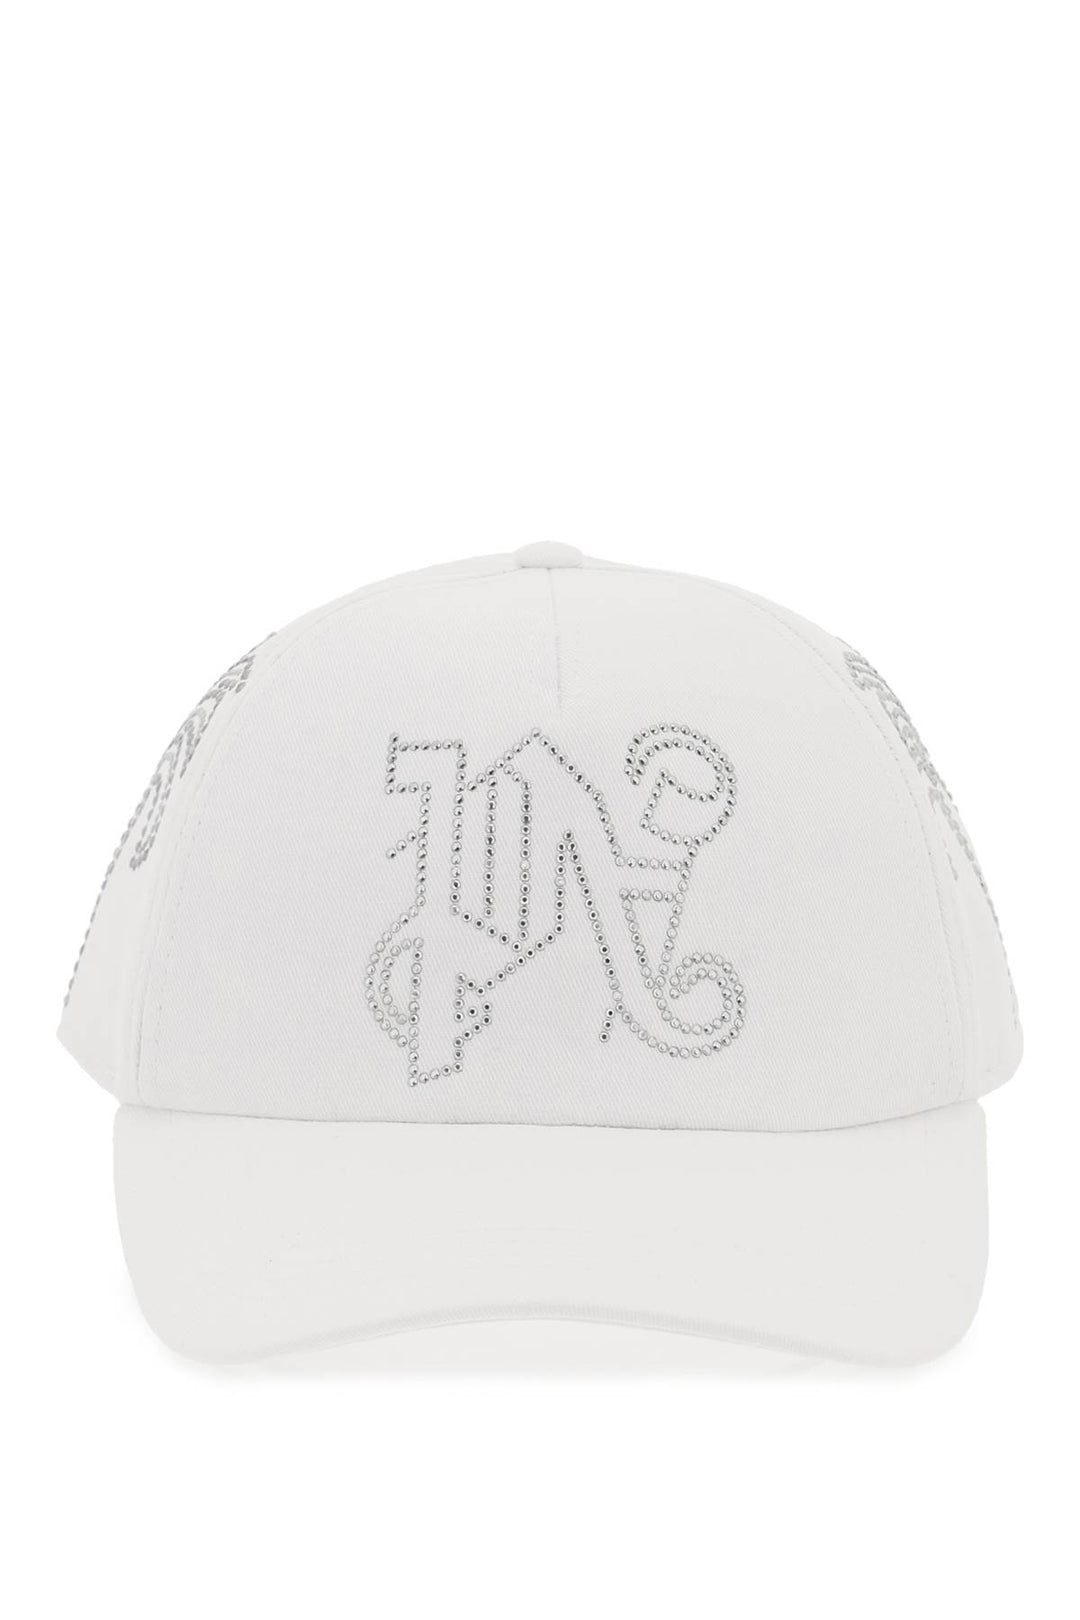 pa monogram baseball cap-0